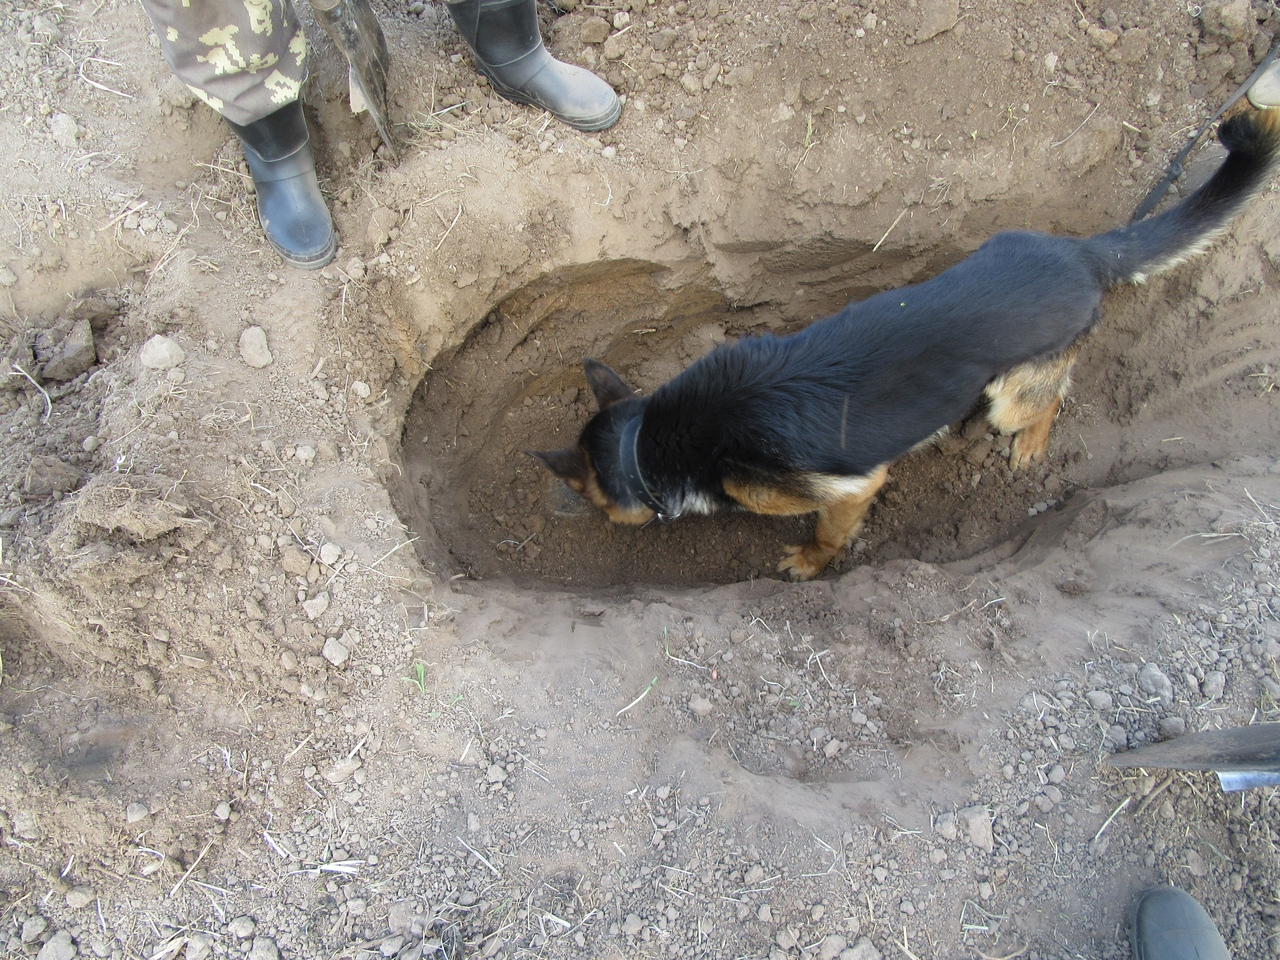 Зарезал и закопал в поле: арестован житель Мордовии, подозреваемый в убийстве мужчины (фото)